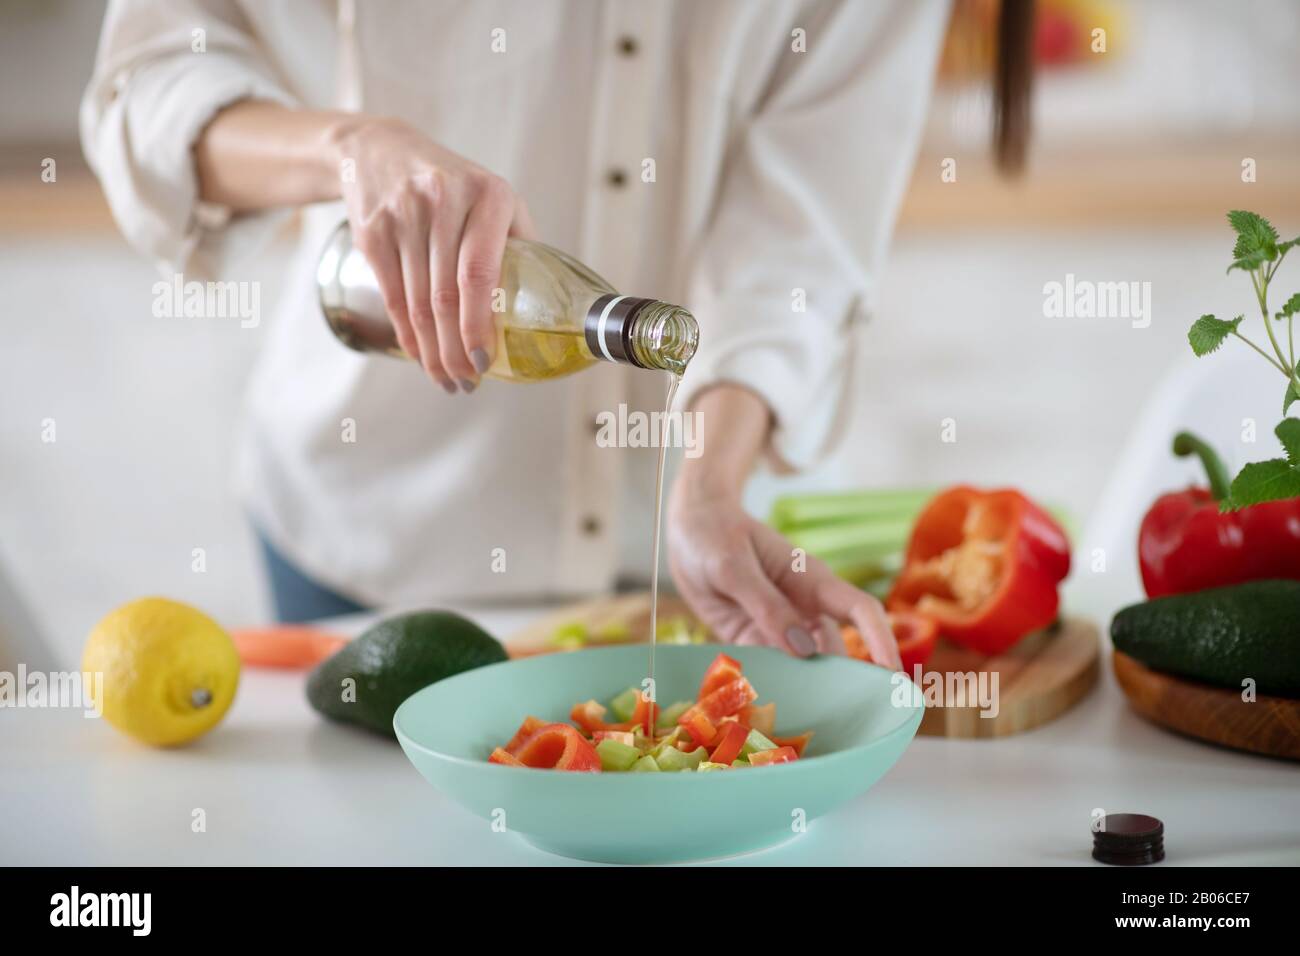 Mains d'une jeune femme qui verse de l'huile d'olive dans une salade. Banque D'Images